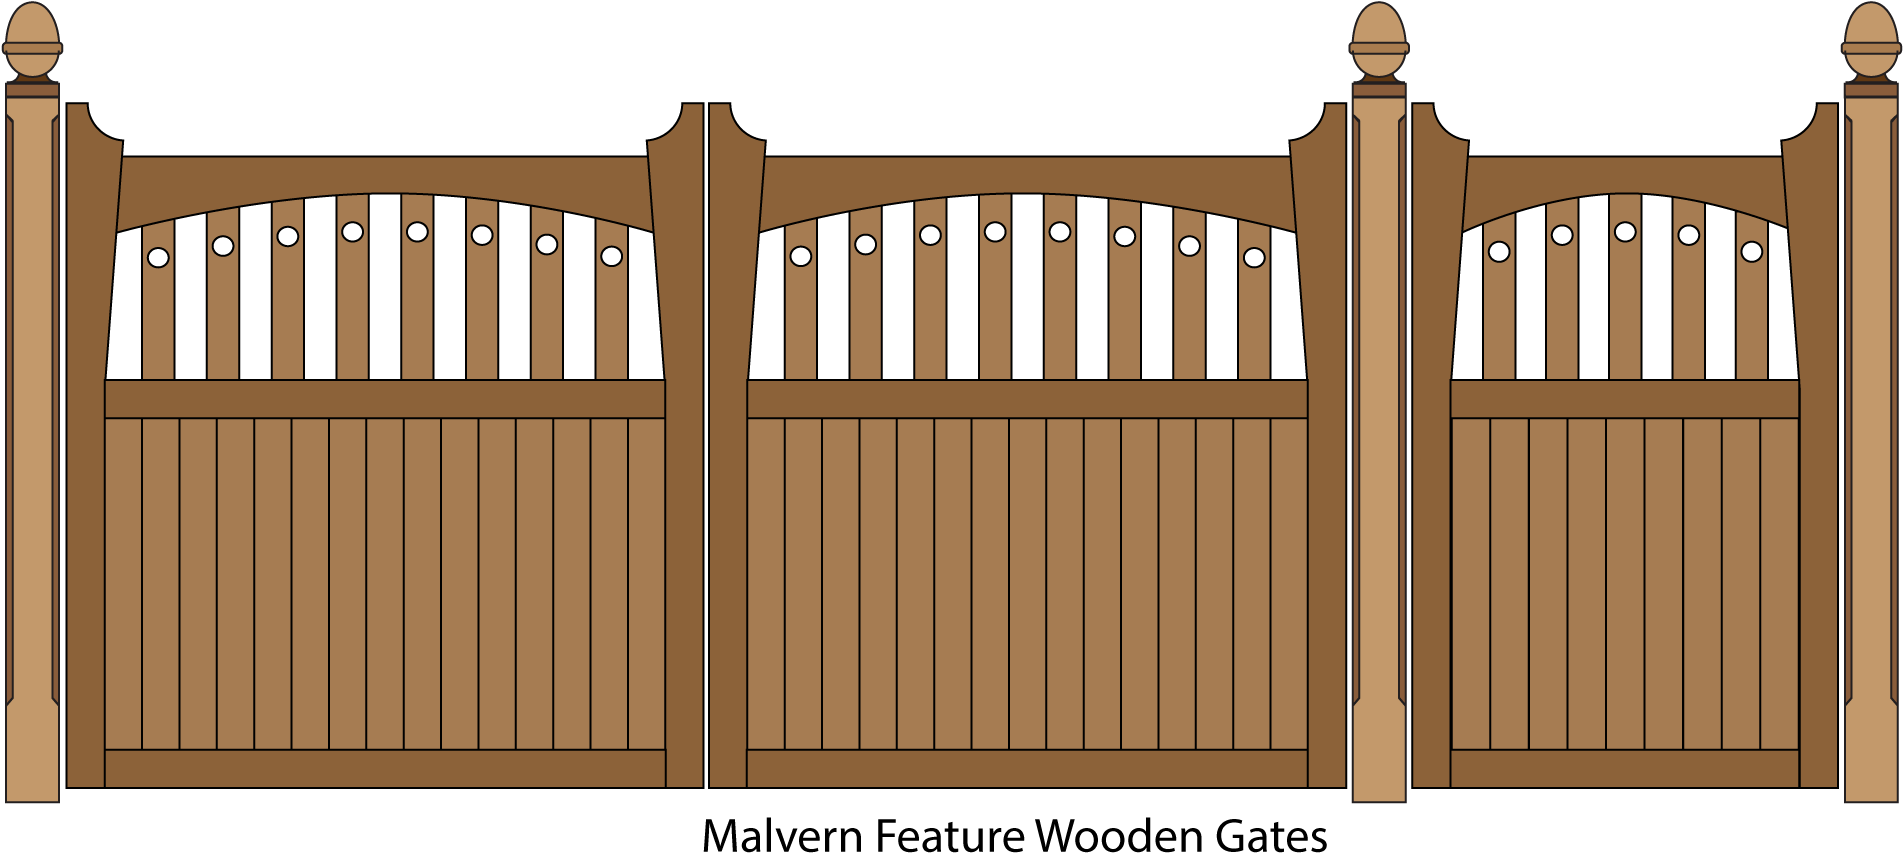 Grid Door Boarding Step Gate PNG